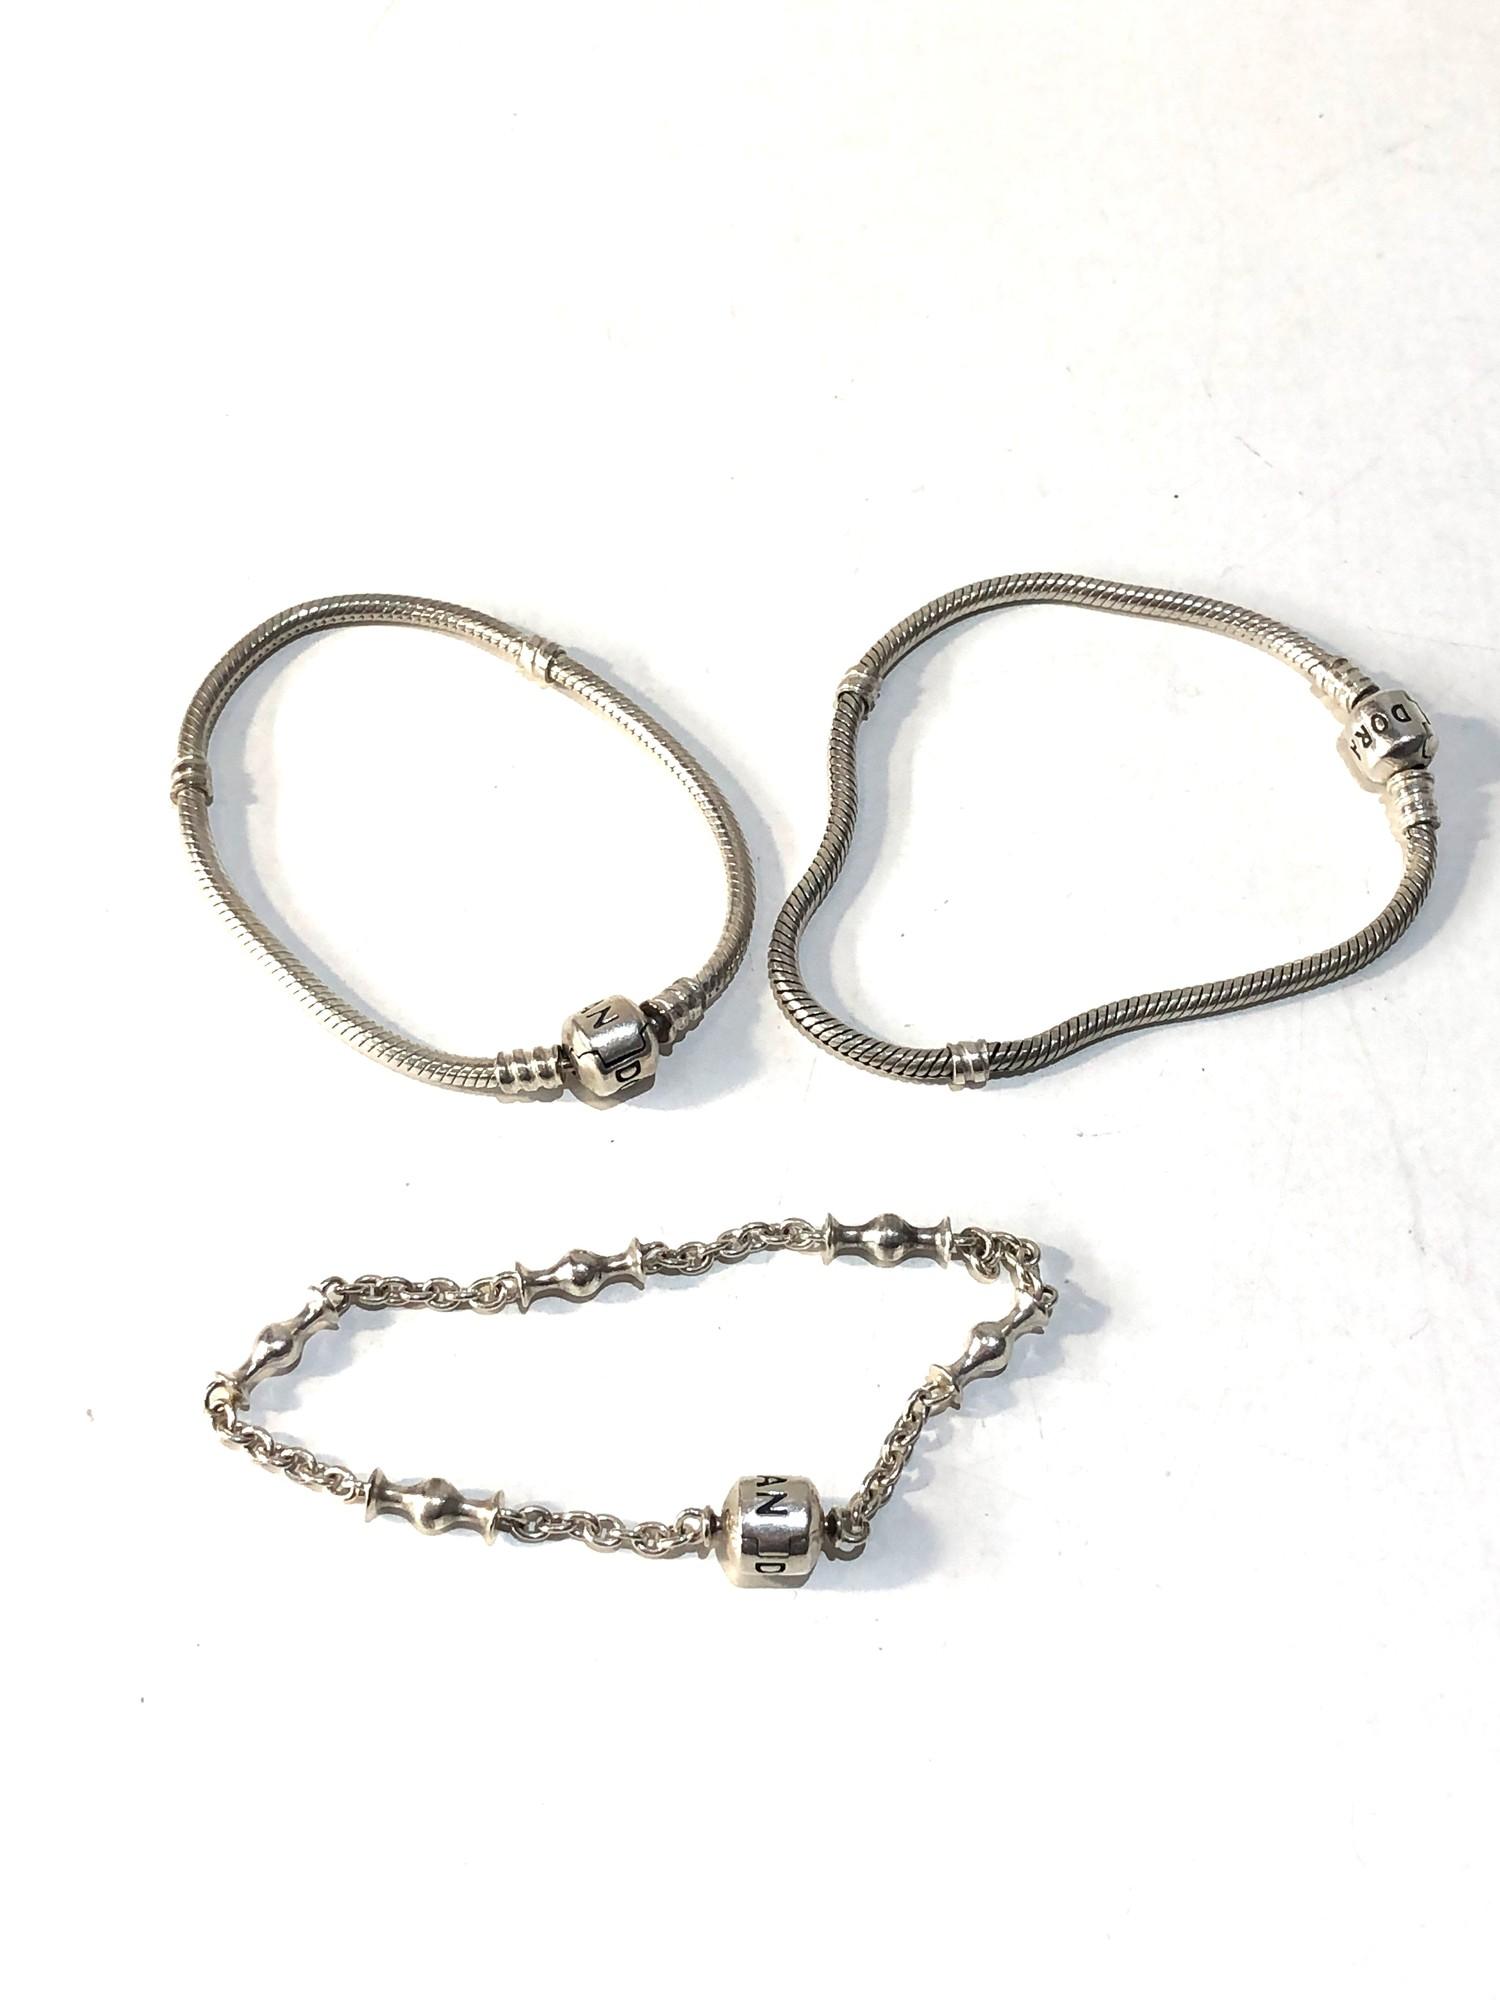 3 silver pandora bracelets - Image 2 of 2